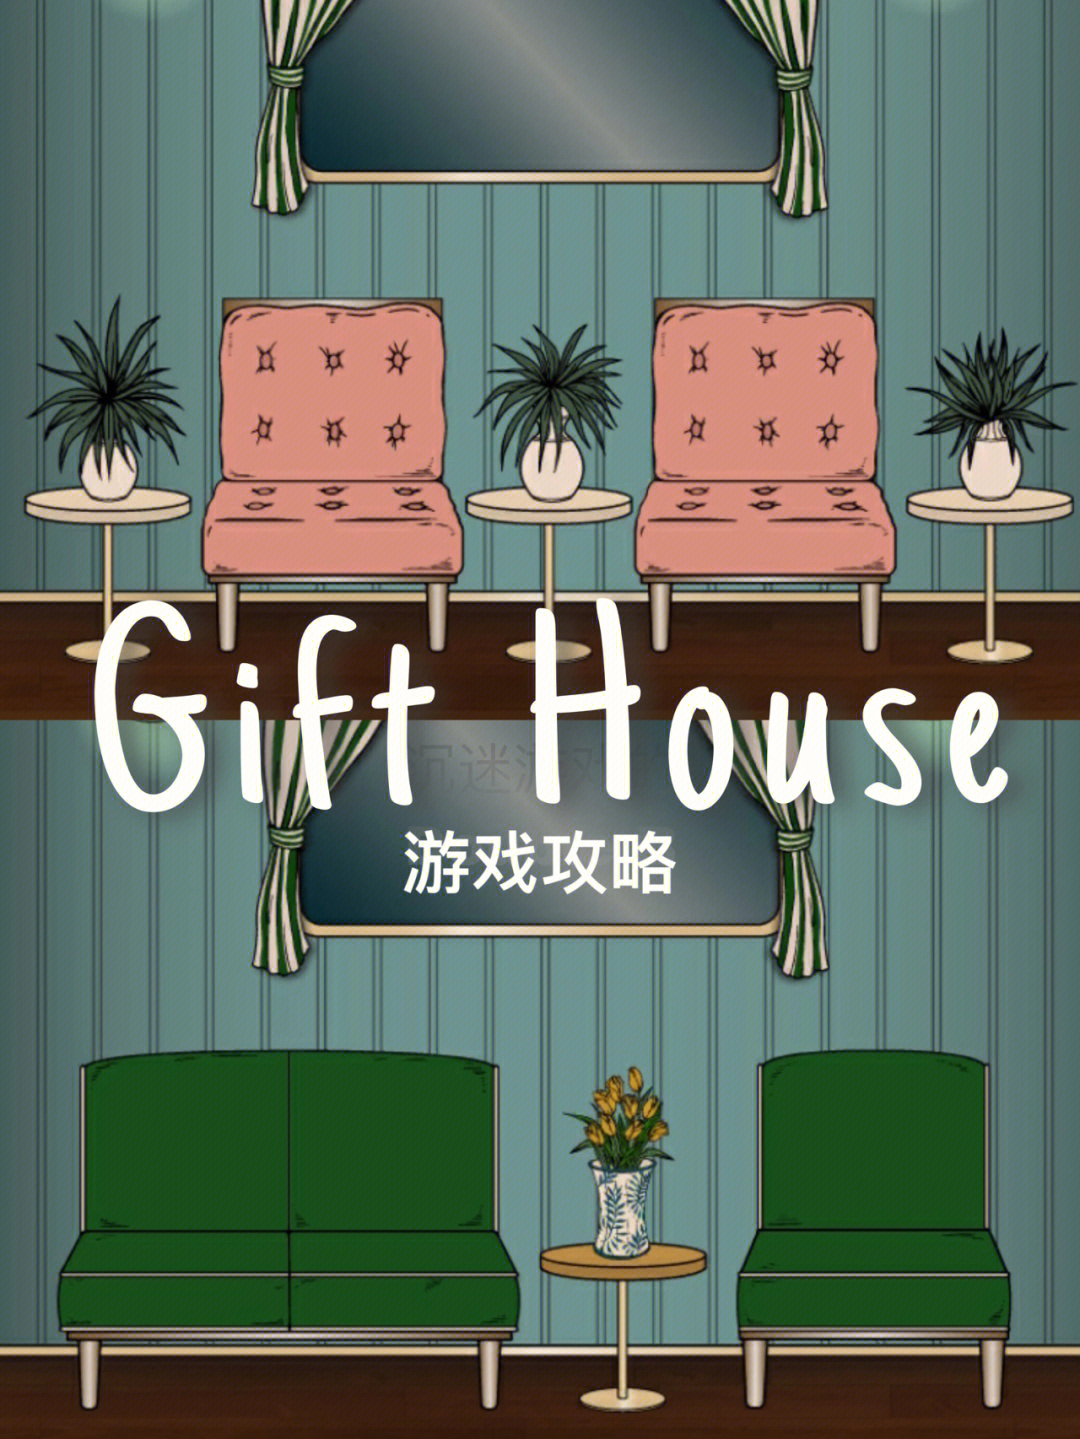 97游戏名称:gift house